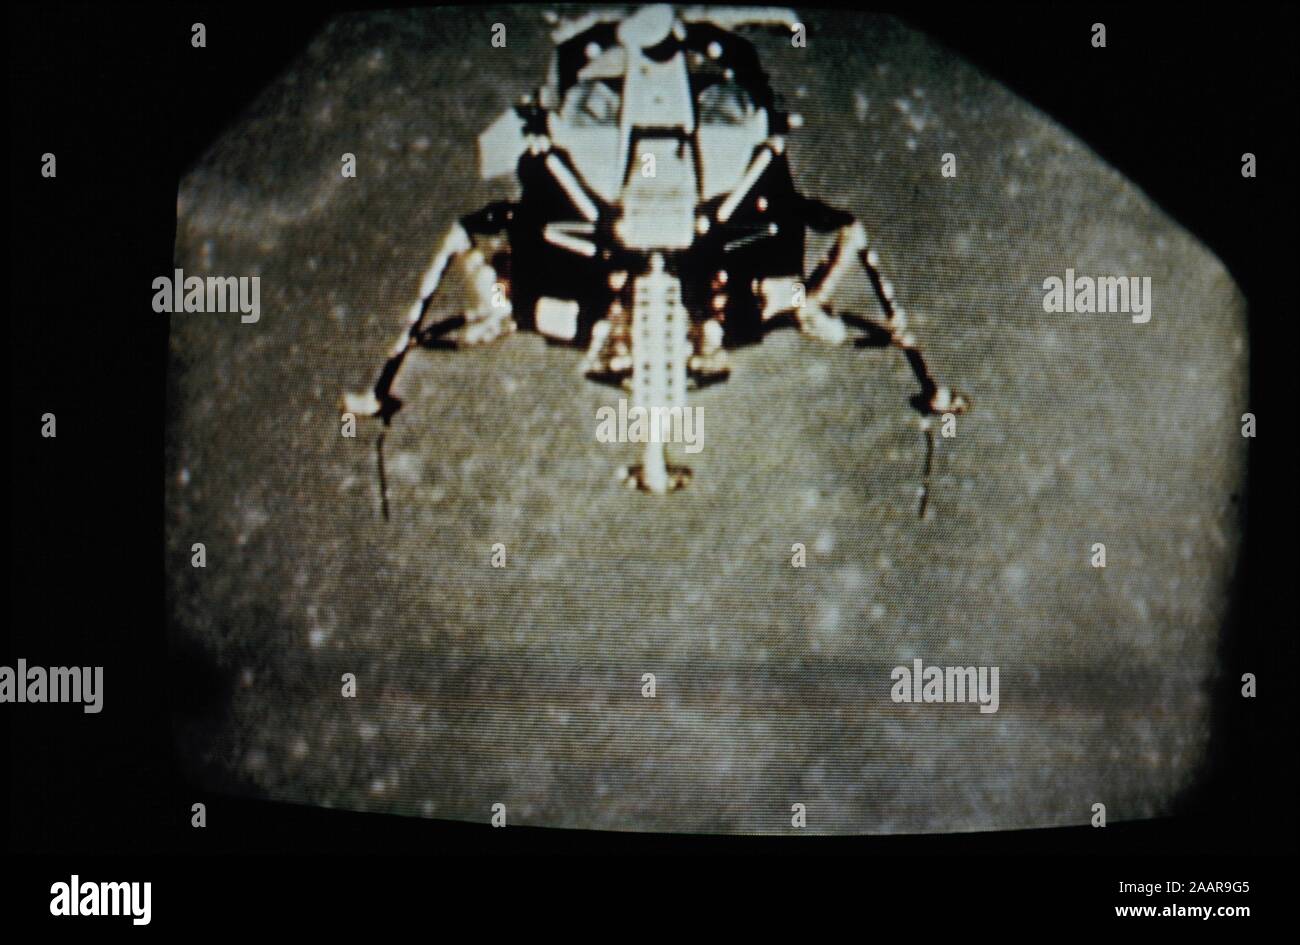 Teleclip - Apollo 11 Lunar Module ascending from Moon surface - photograph taken directly from TV screen circa 1969 Stock Photo